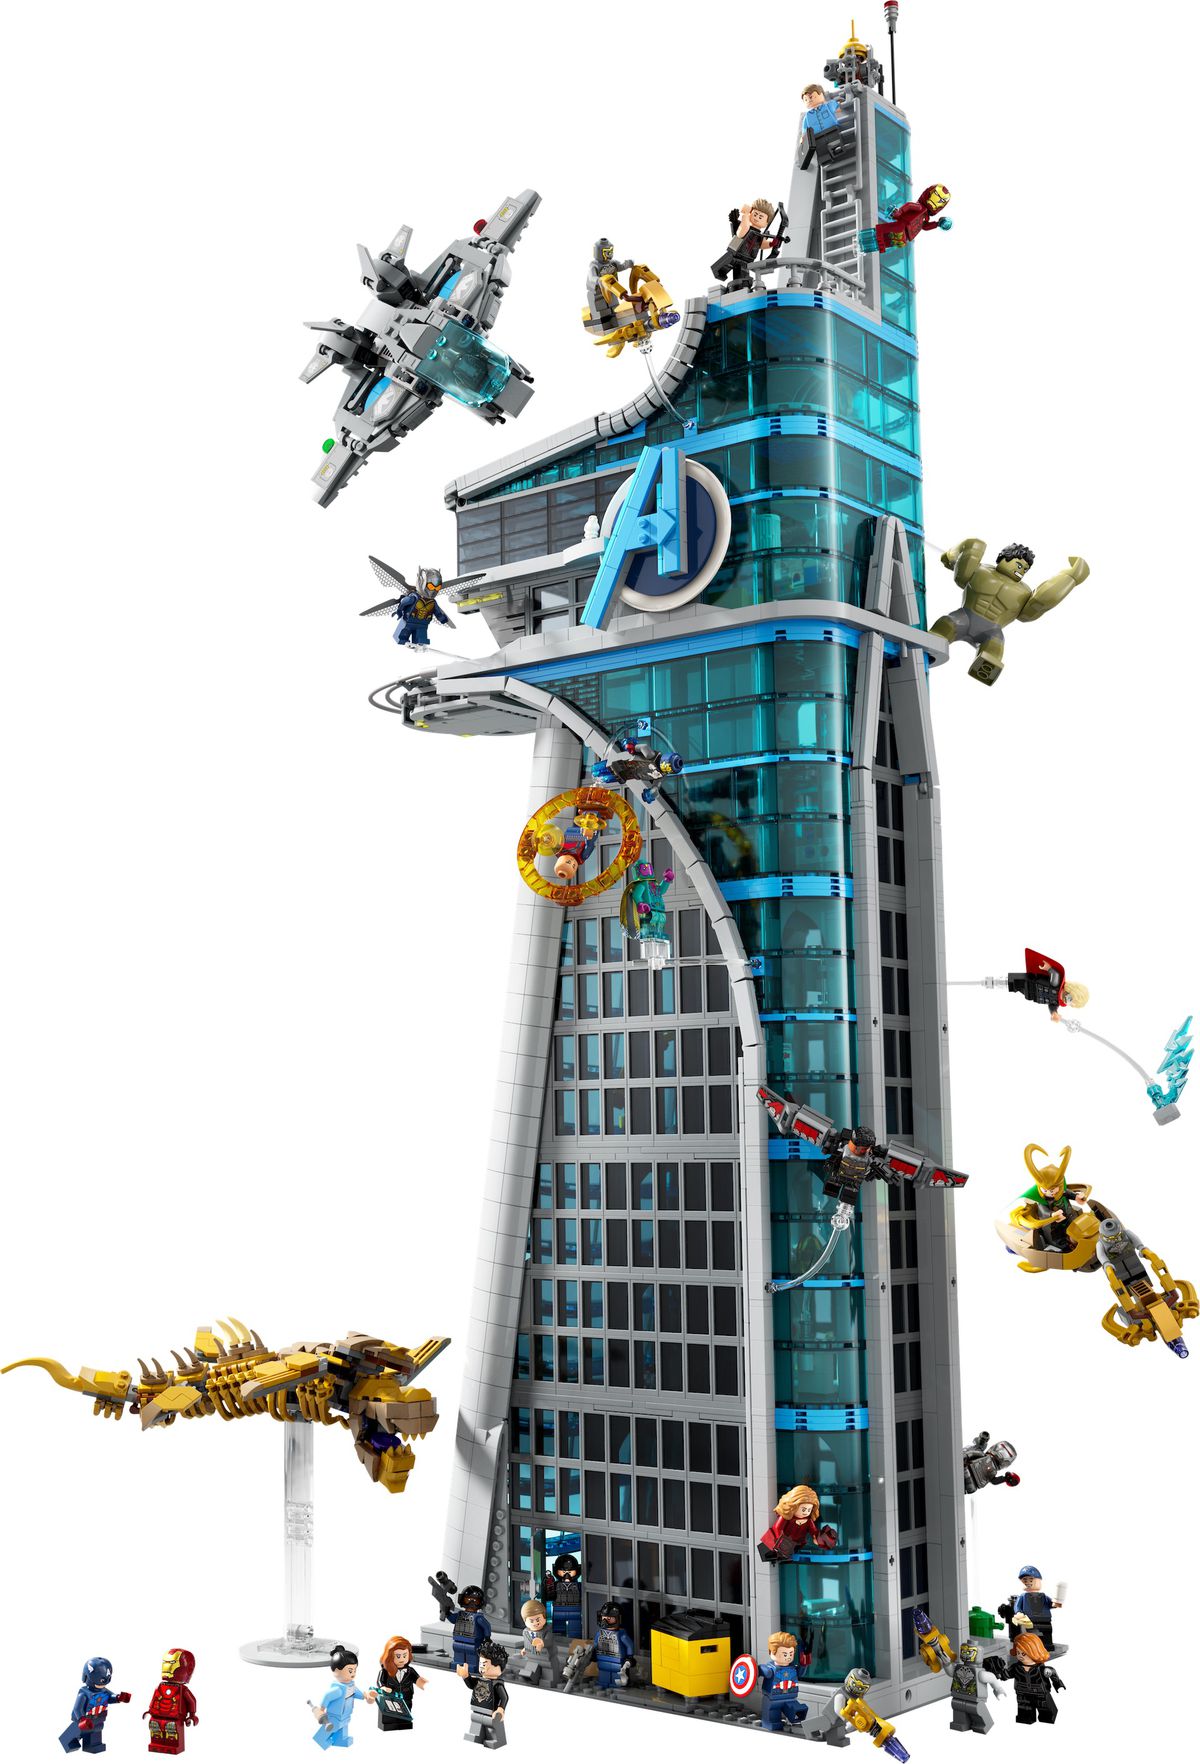 Een productfoto van de Lego Avengers Tower, waarop verschillende Avengers- en Chitauri-troepen aan de buitenkant te zien zijn